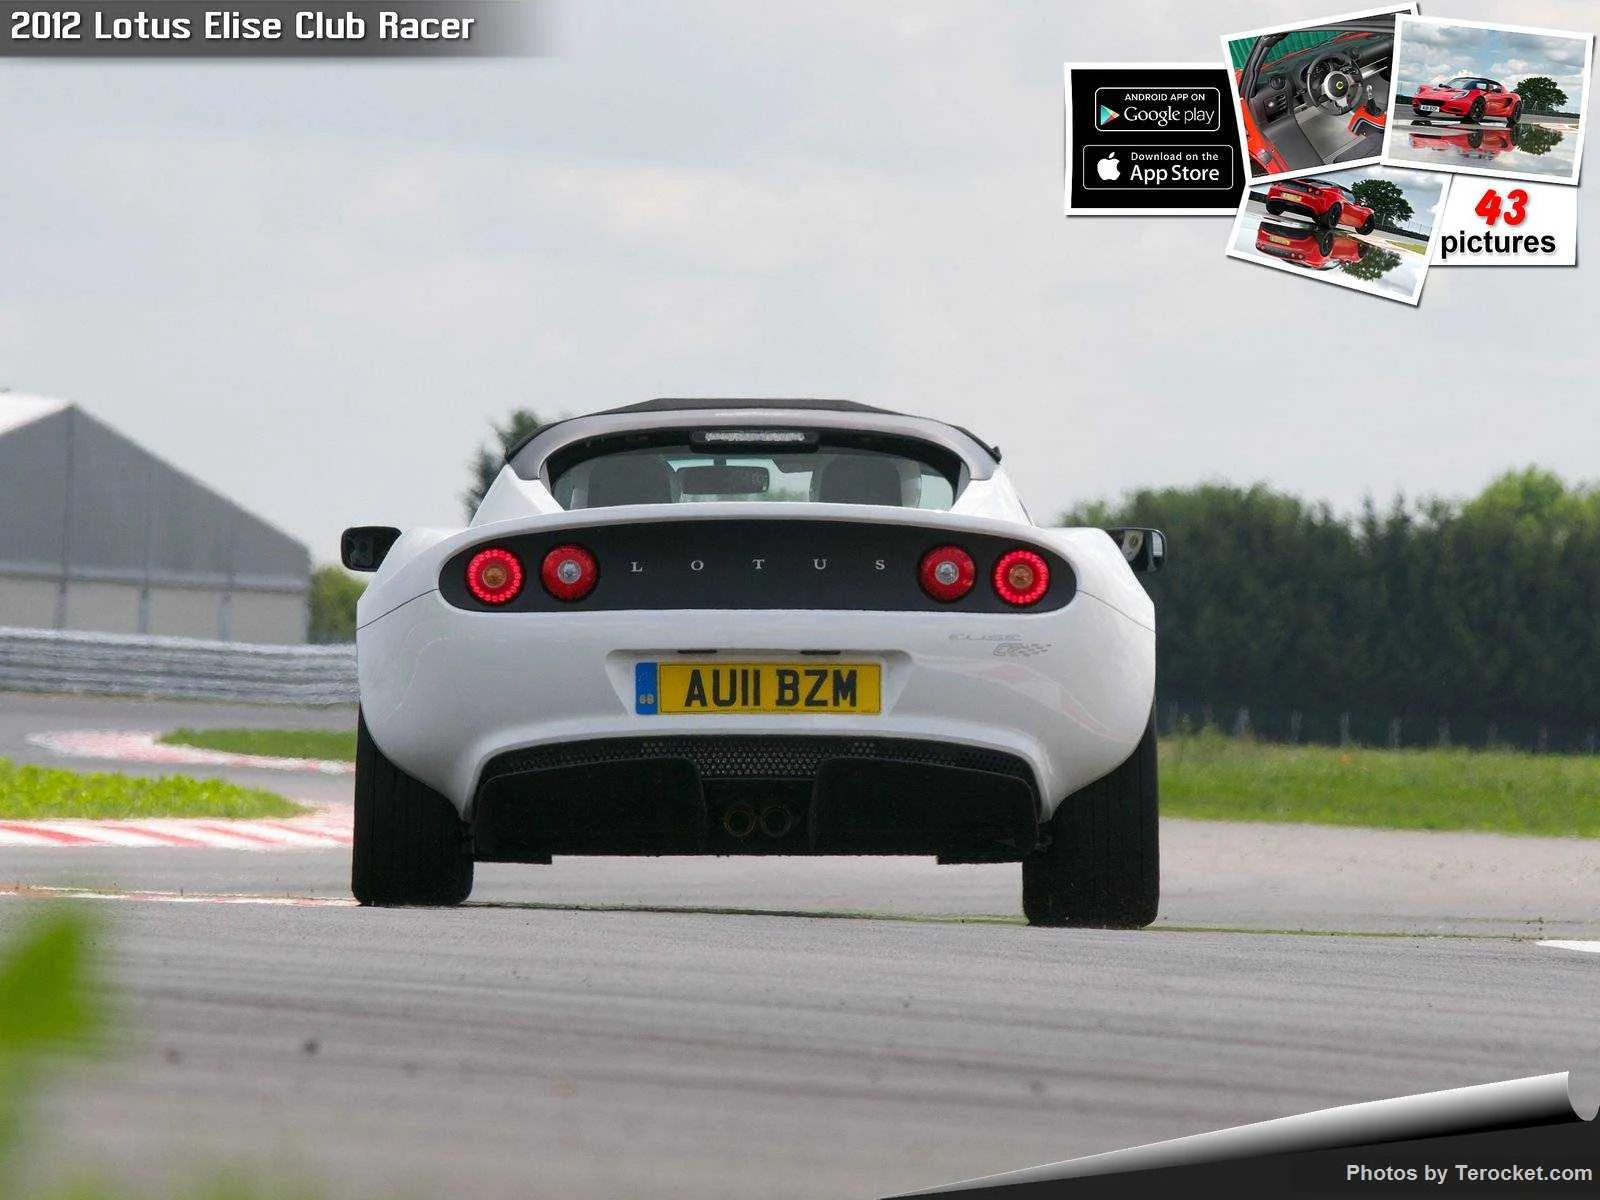 Hình ảnh siêu xe Lotus Elise Club Racer 2012 & nội ngoại thất